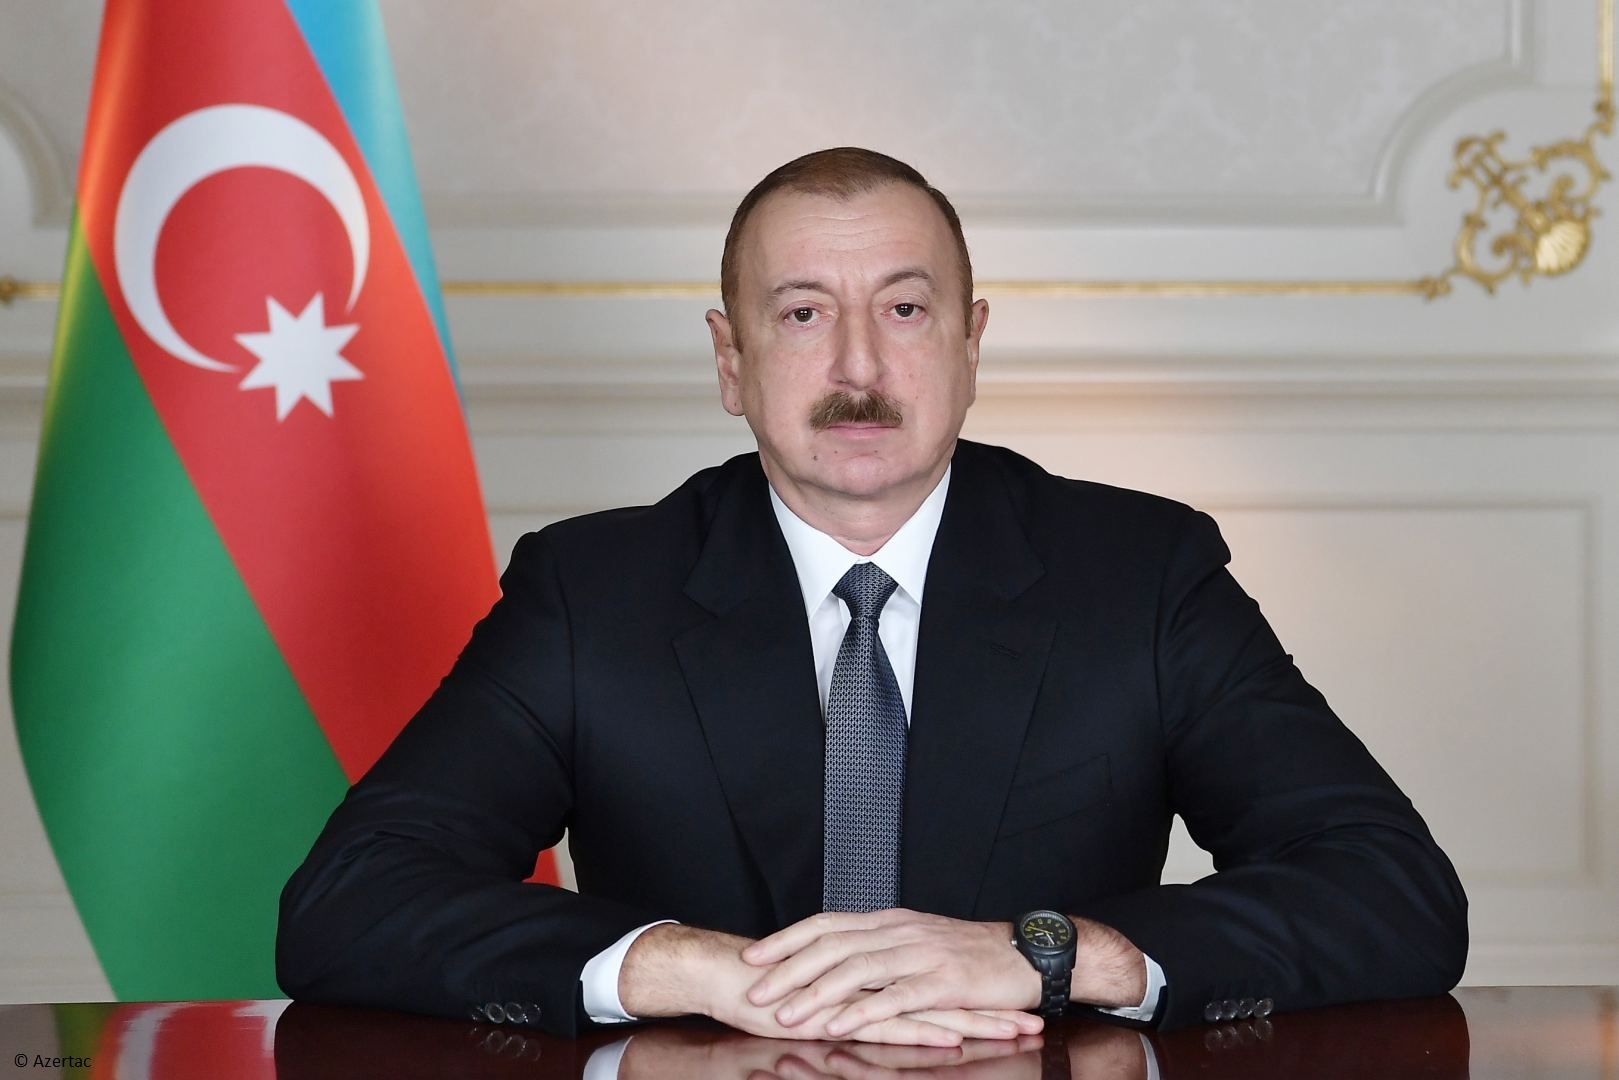 Le président Ilham Aliyev félicite Yoshihide Suga pour son élection au poste de Premier ministre du Japon